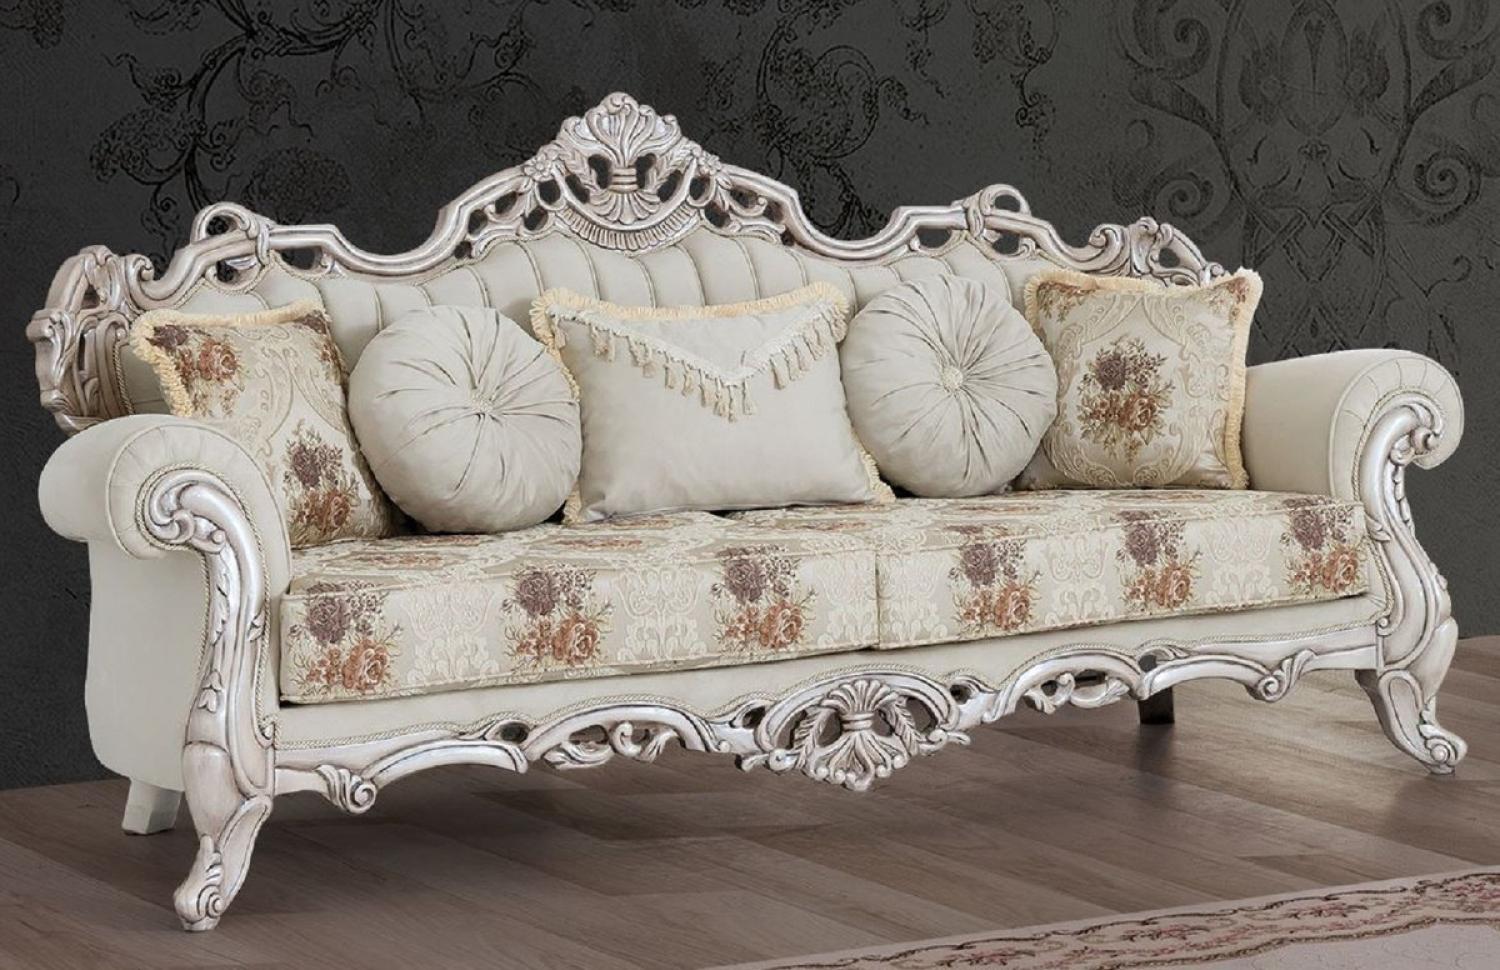 Casa Padrino Luxus Barock Sofa Cremefarben / Beige / Mehrfarbig / Antik Weiß - Prunkvolles Wohnzimmer Sofa mit elegantem Muster - Barock Wohnzimmer Möbel Bild 1